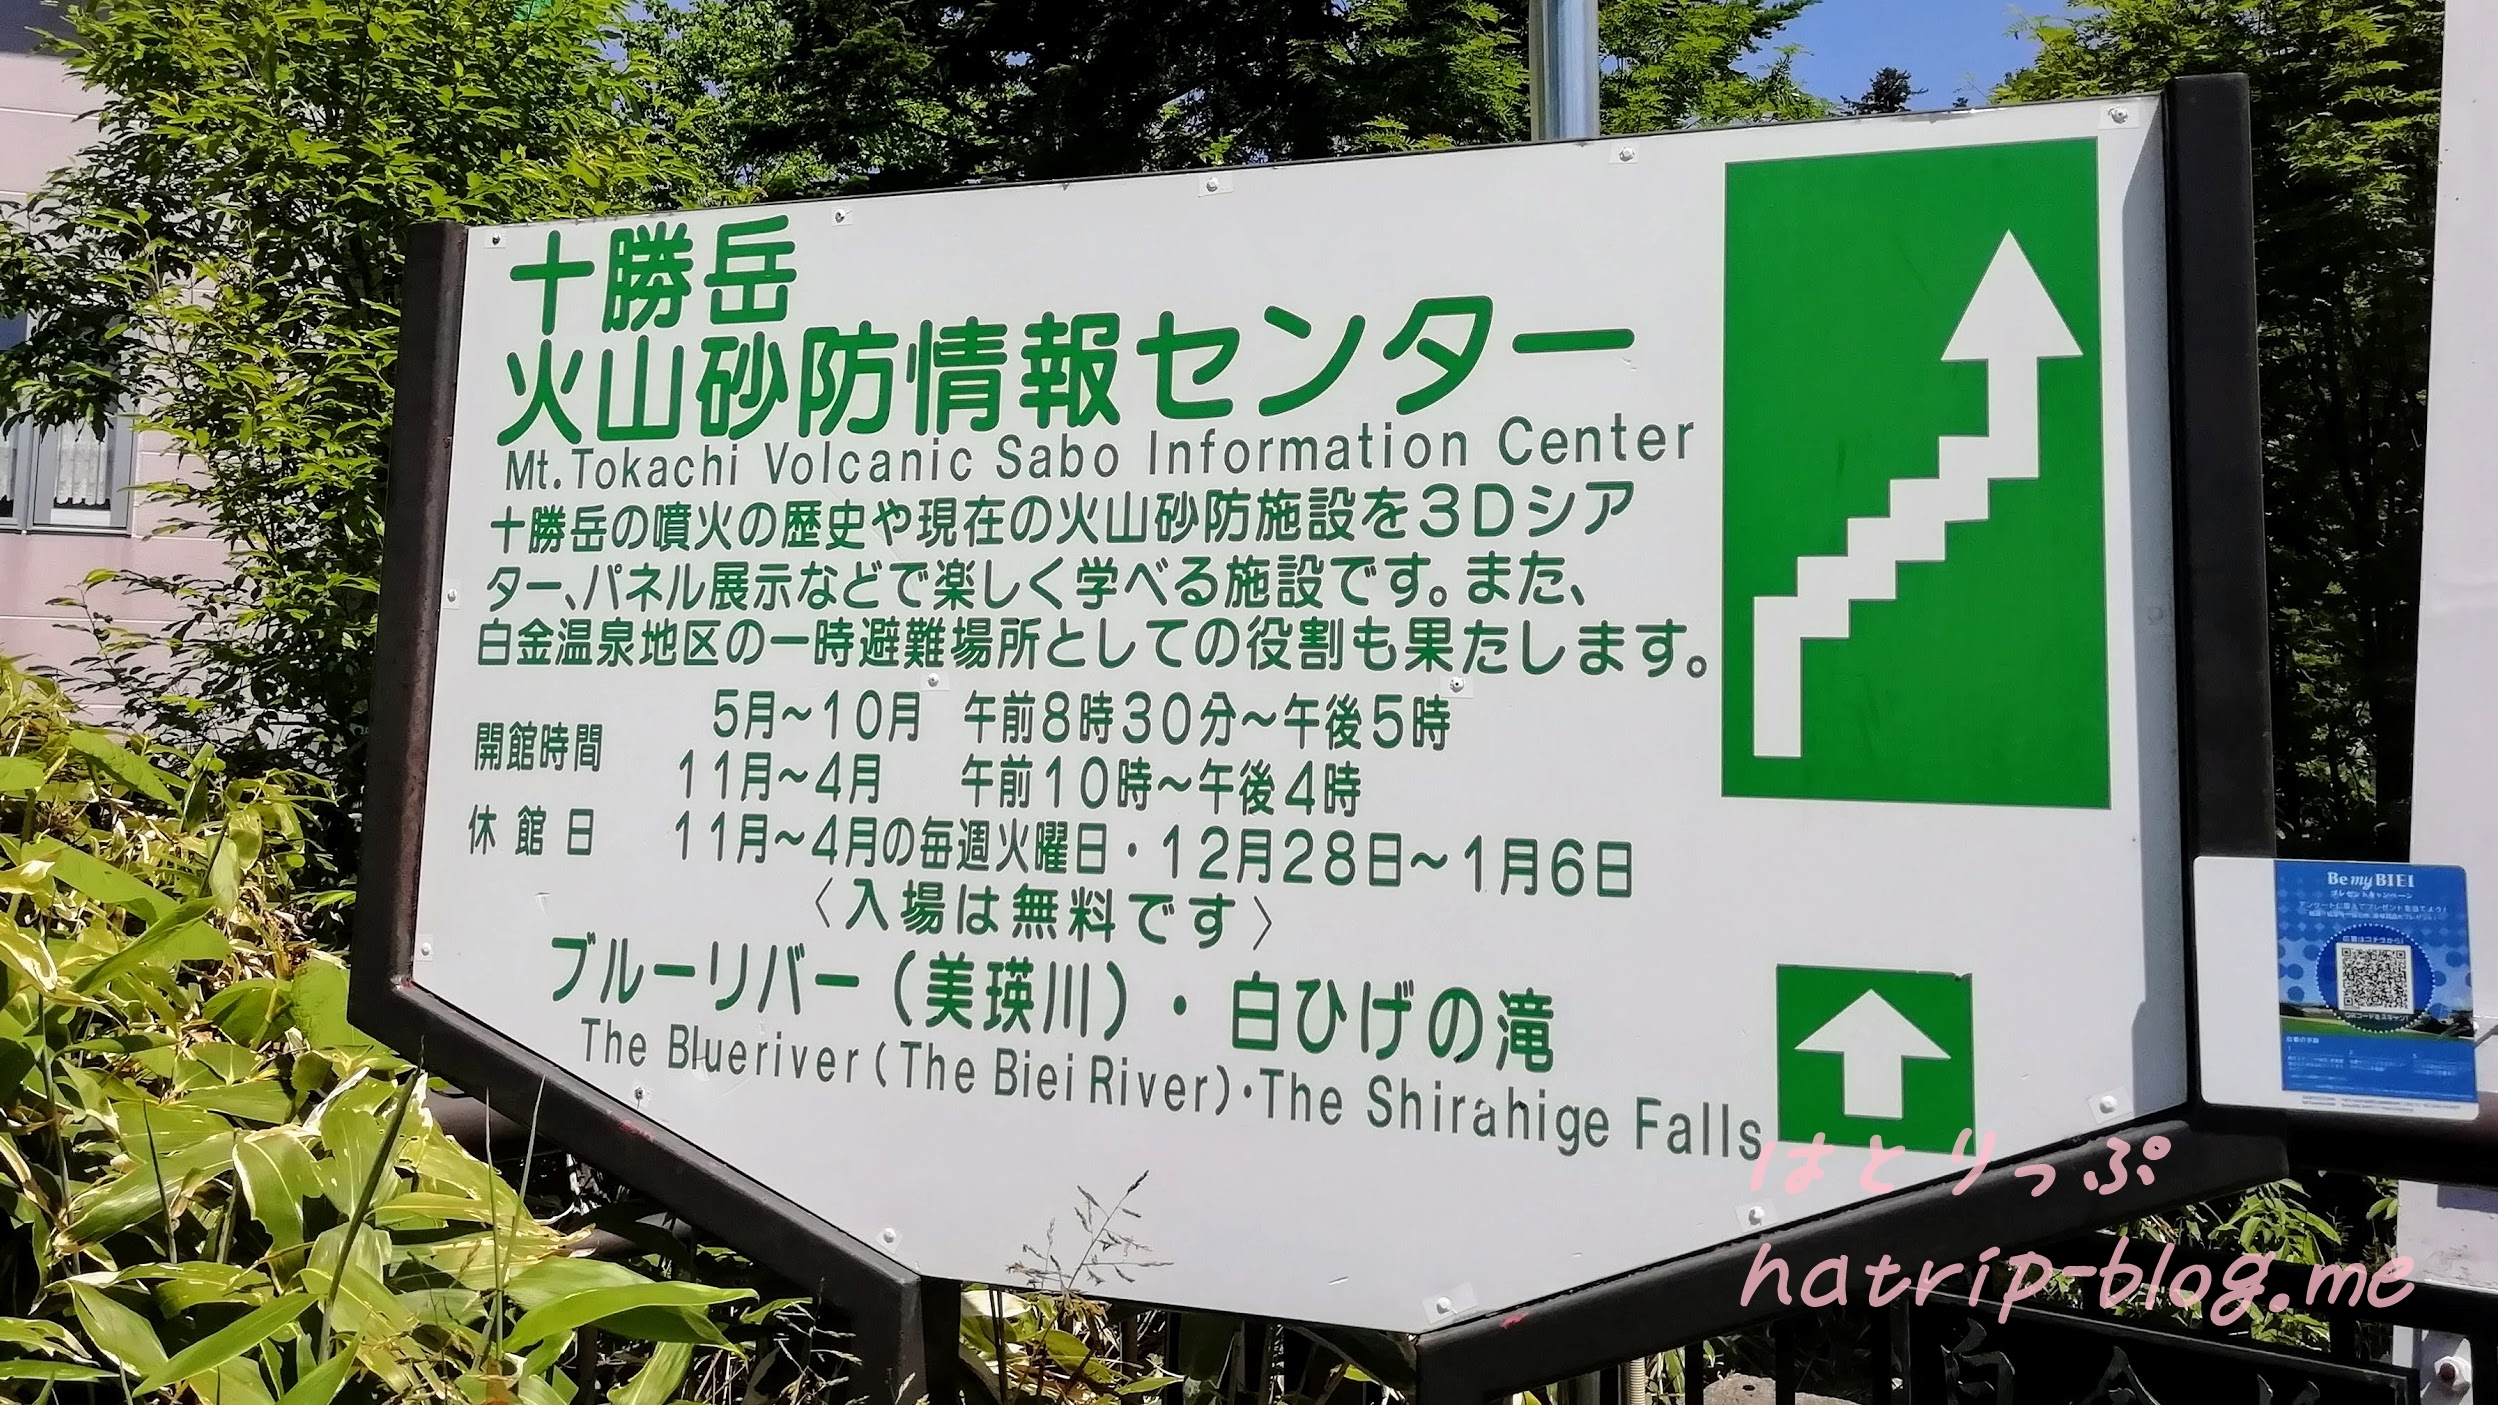 北海道 美瑛町 白ひげの滝 十勝岳火山砂防情報センター